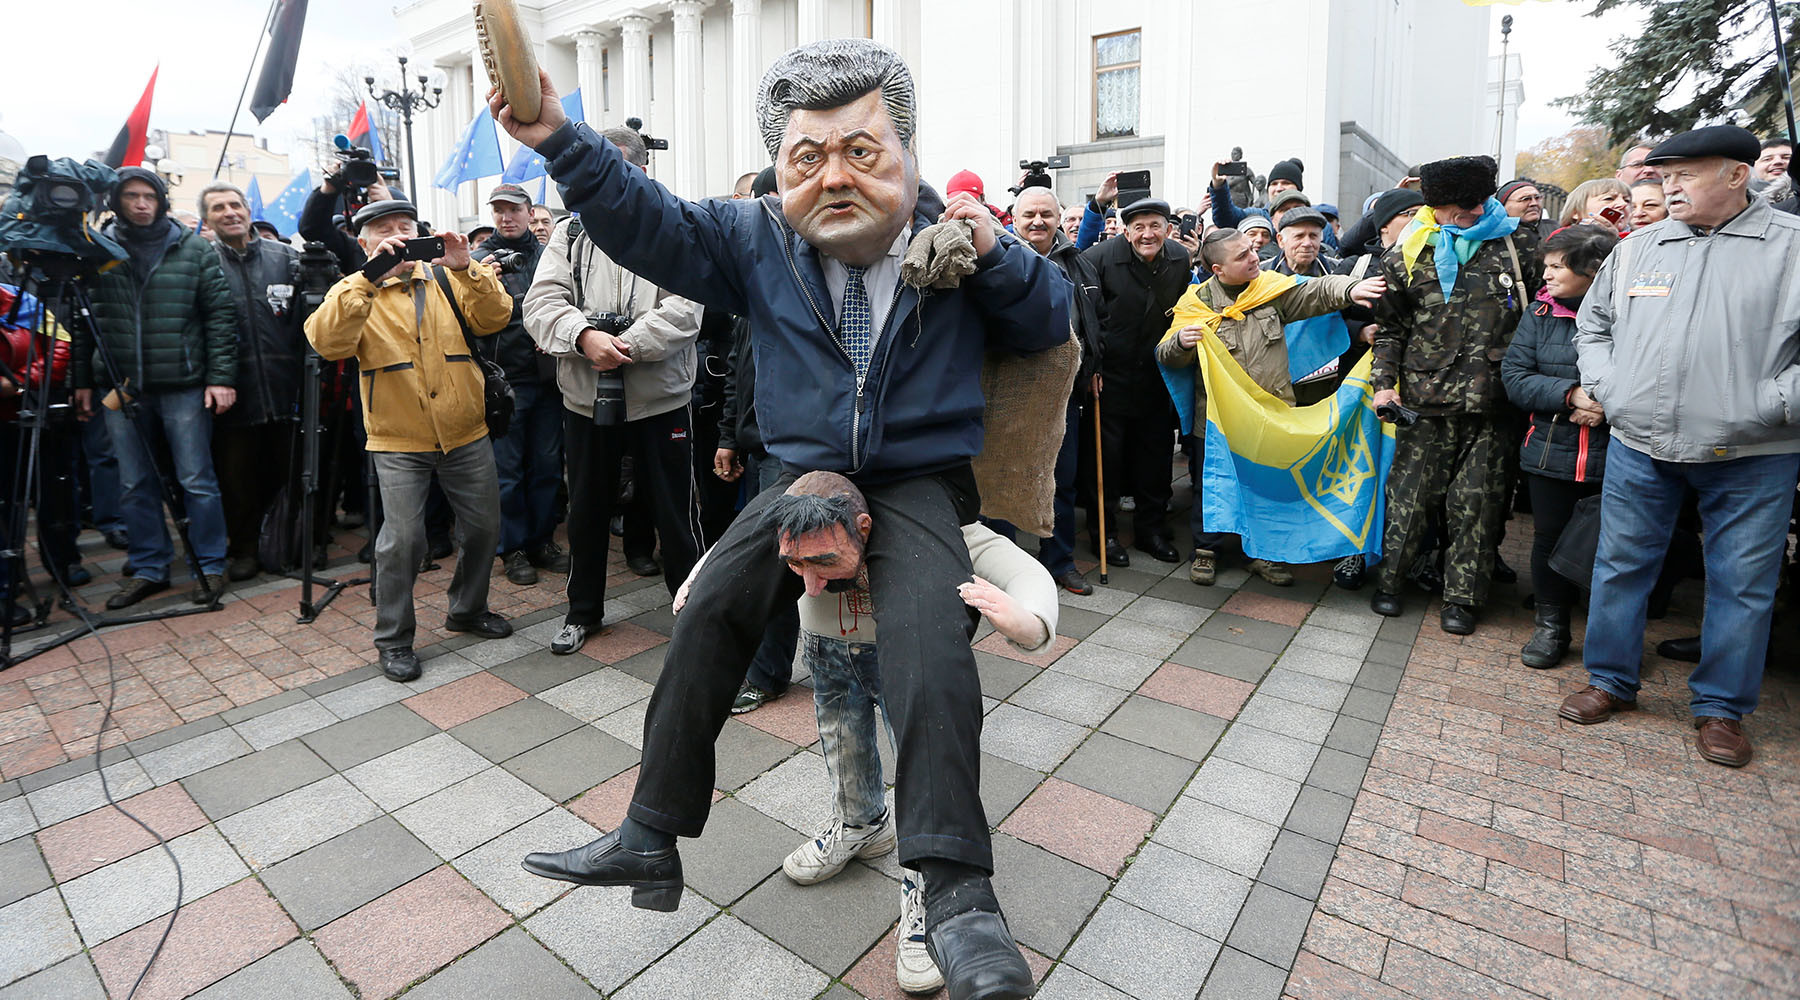 Новости украины укр нет. Саакашвили на Майдане. Украинцы сейчас. Саакашвили Майдан 2013. Украинцы плохой народ.